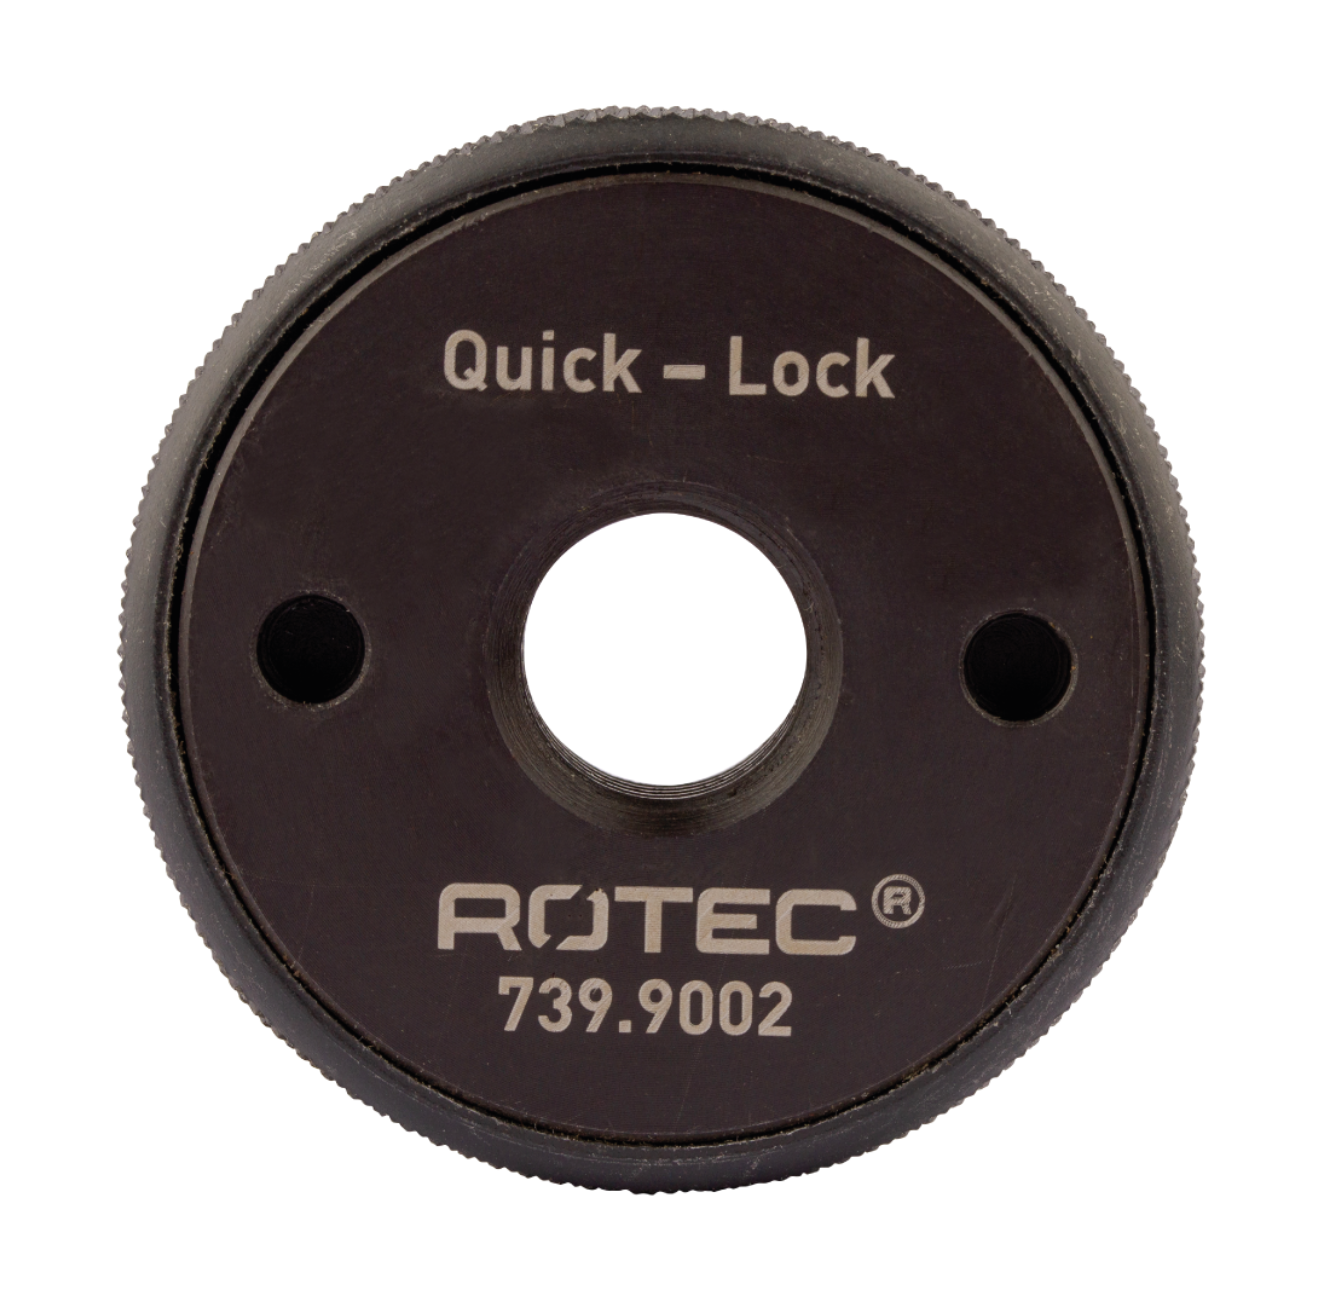 zijde halfgeleider Mellow Rotec Quick-lock snelspanmoer voor haakse slijper - M14 - 739.9002 -  Hevutools.nl